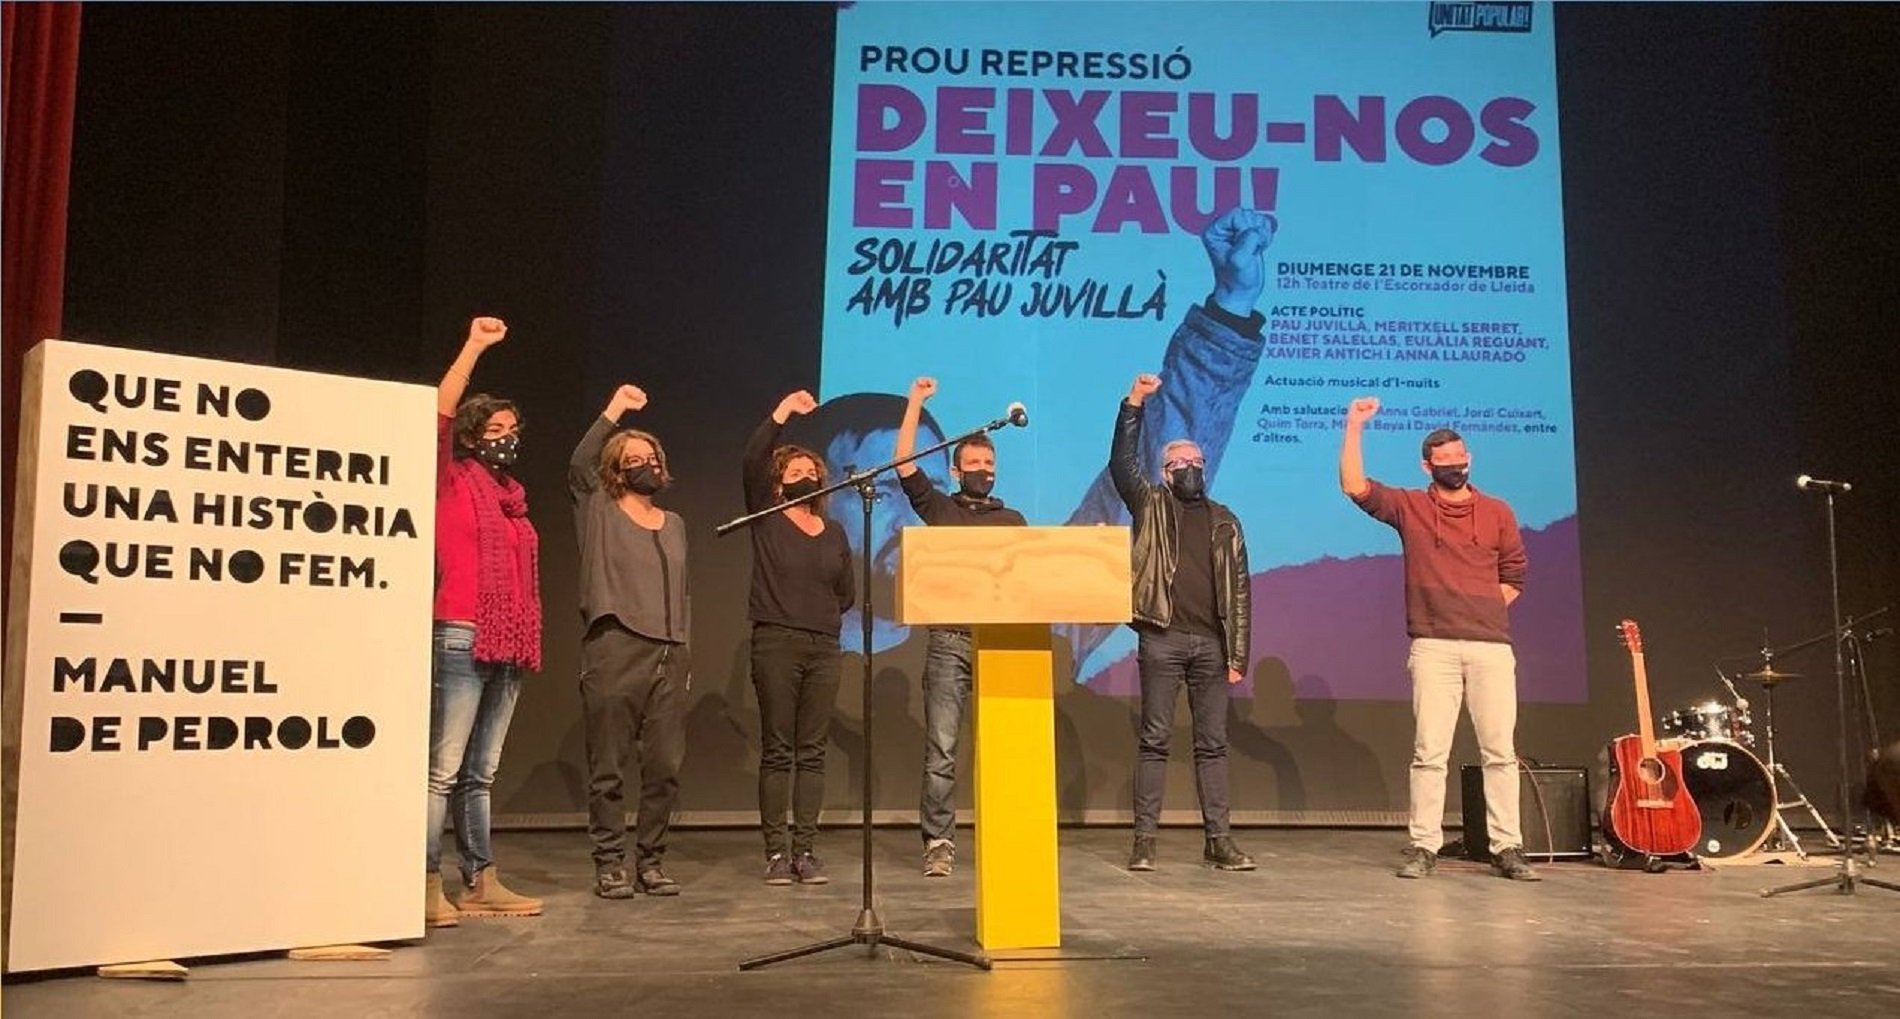 Acto de apoyo al represaliado Pau Juvillà en Lleida